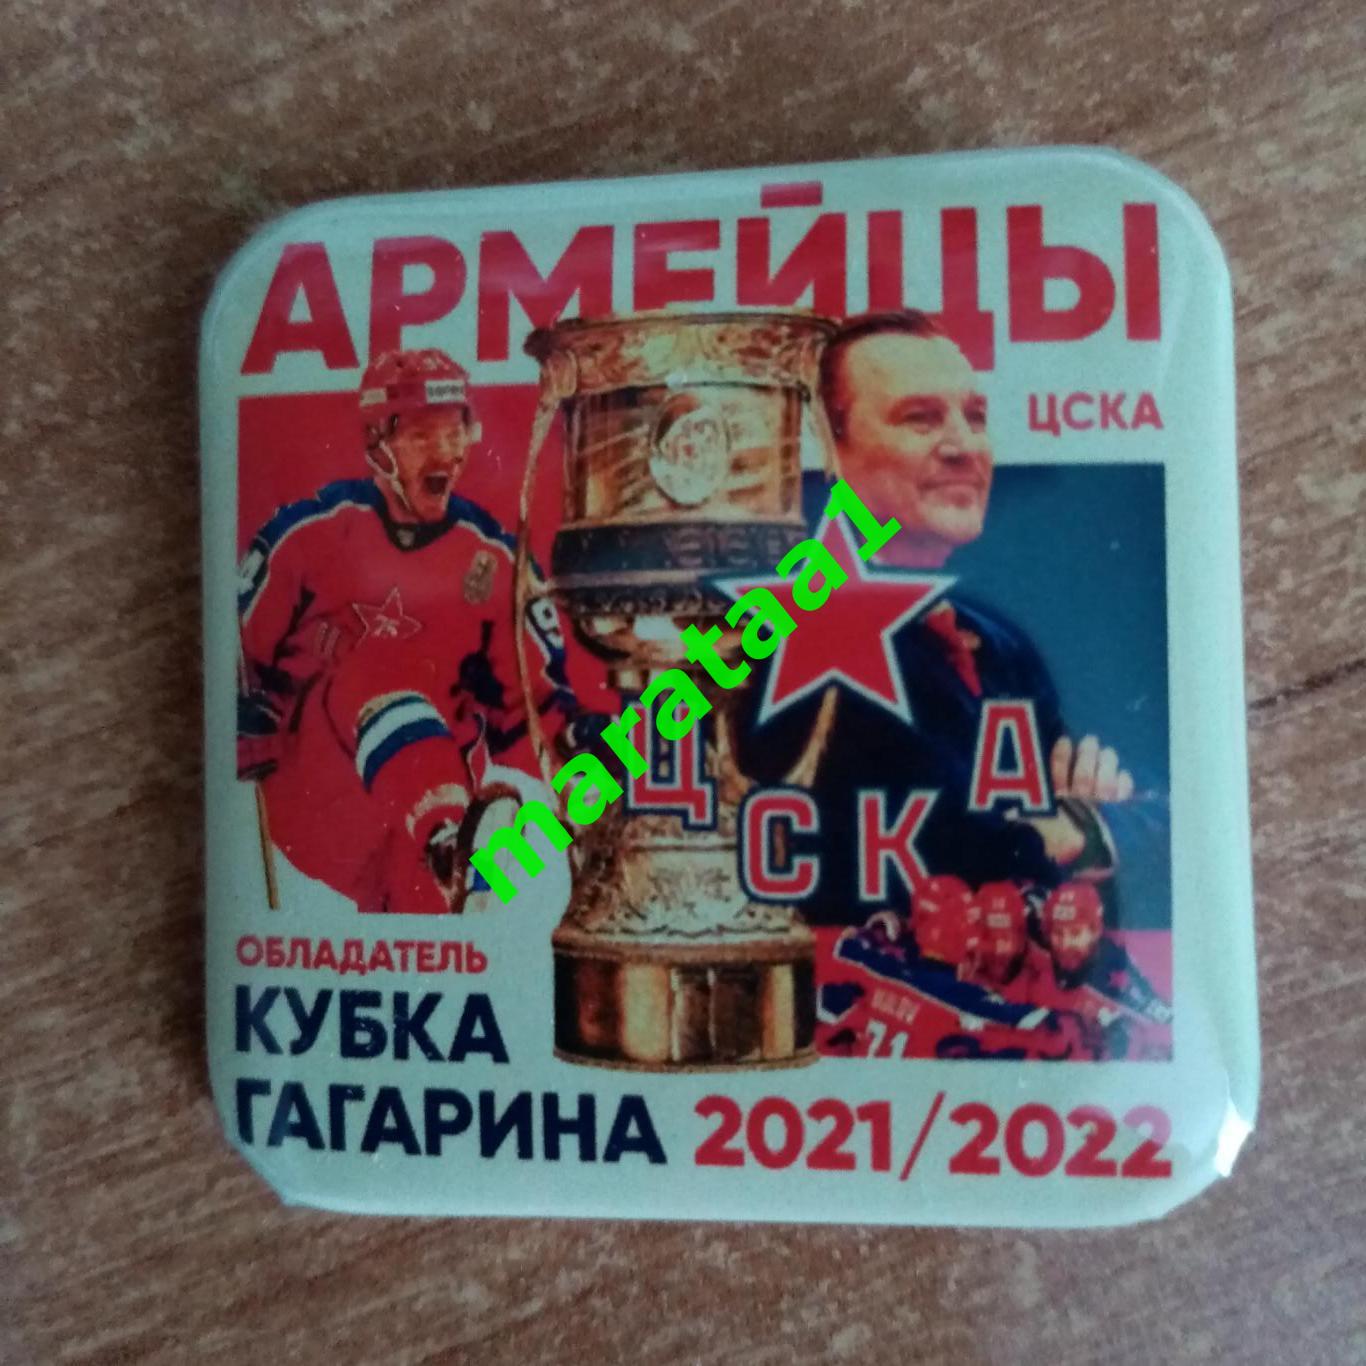 - ЦСКА (Москва) - ОБЛАДАТЕЛЬ КУБКА ГАГАРИНА - 2021/2022